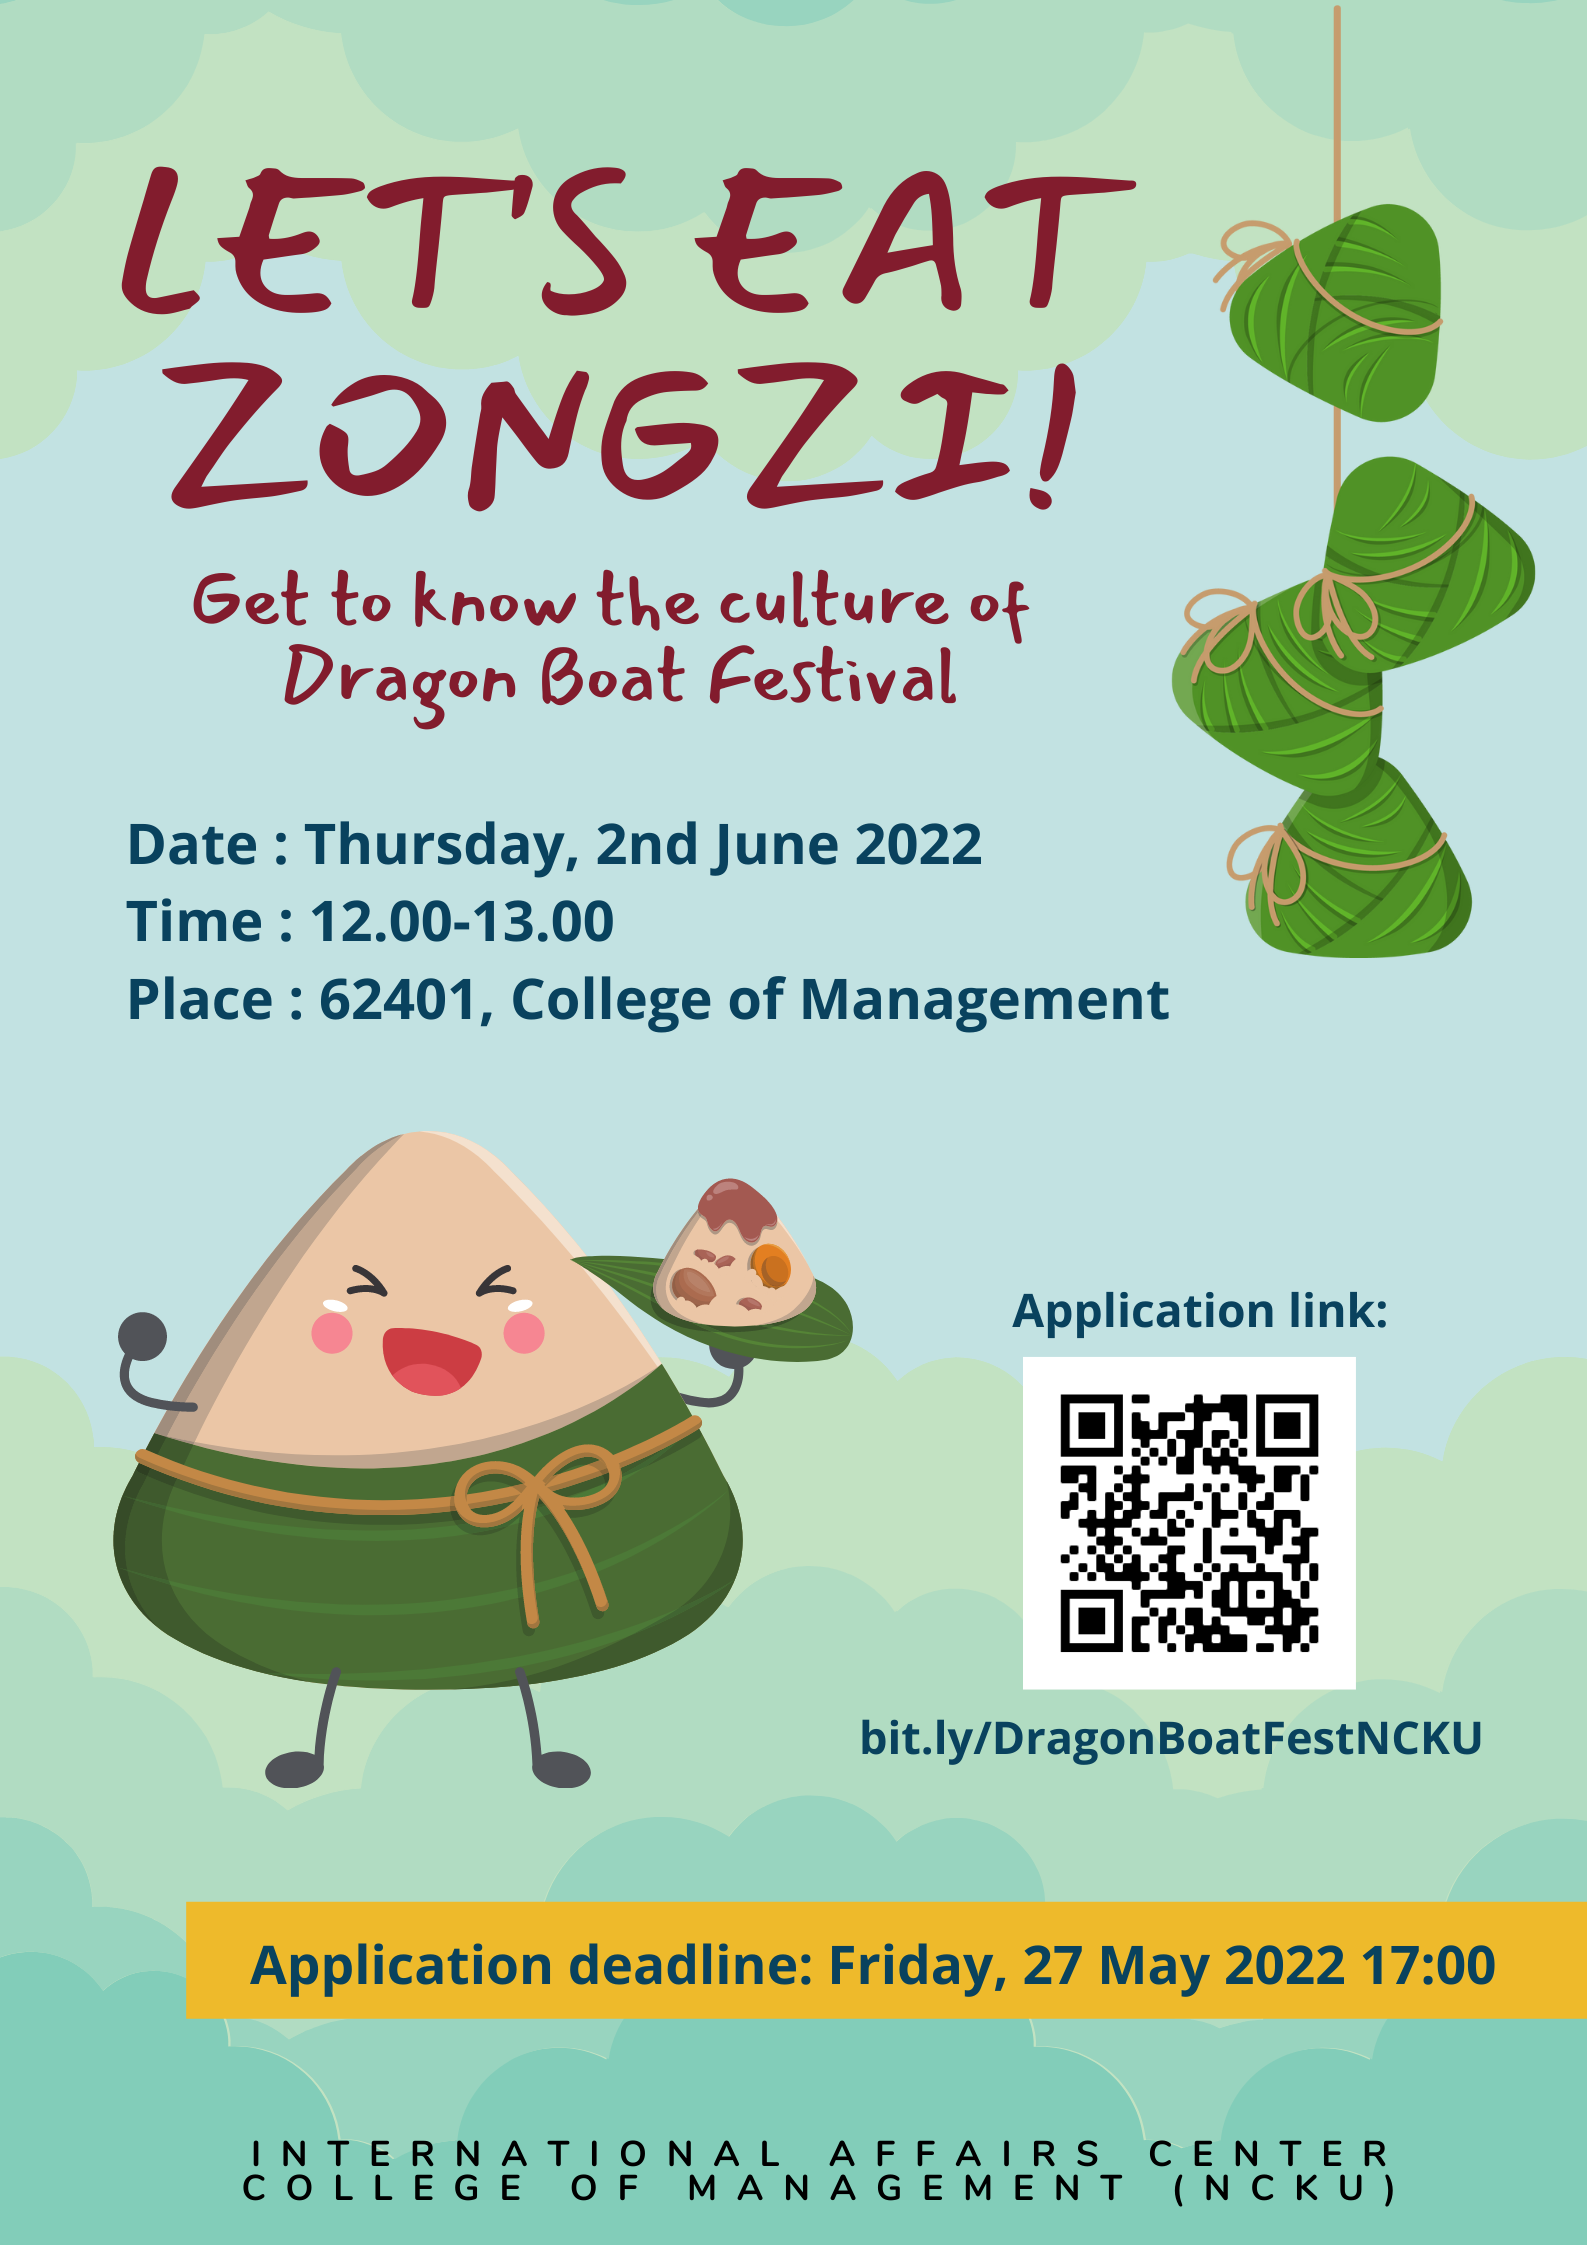 Let's eat zongzhi